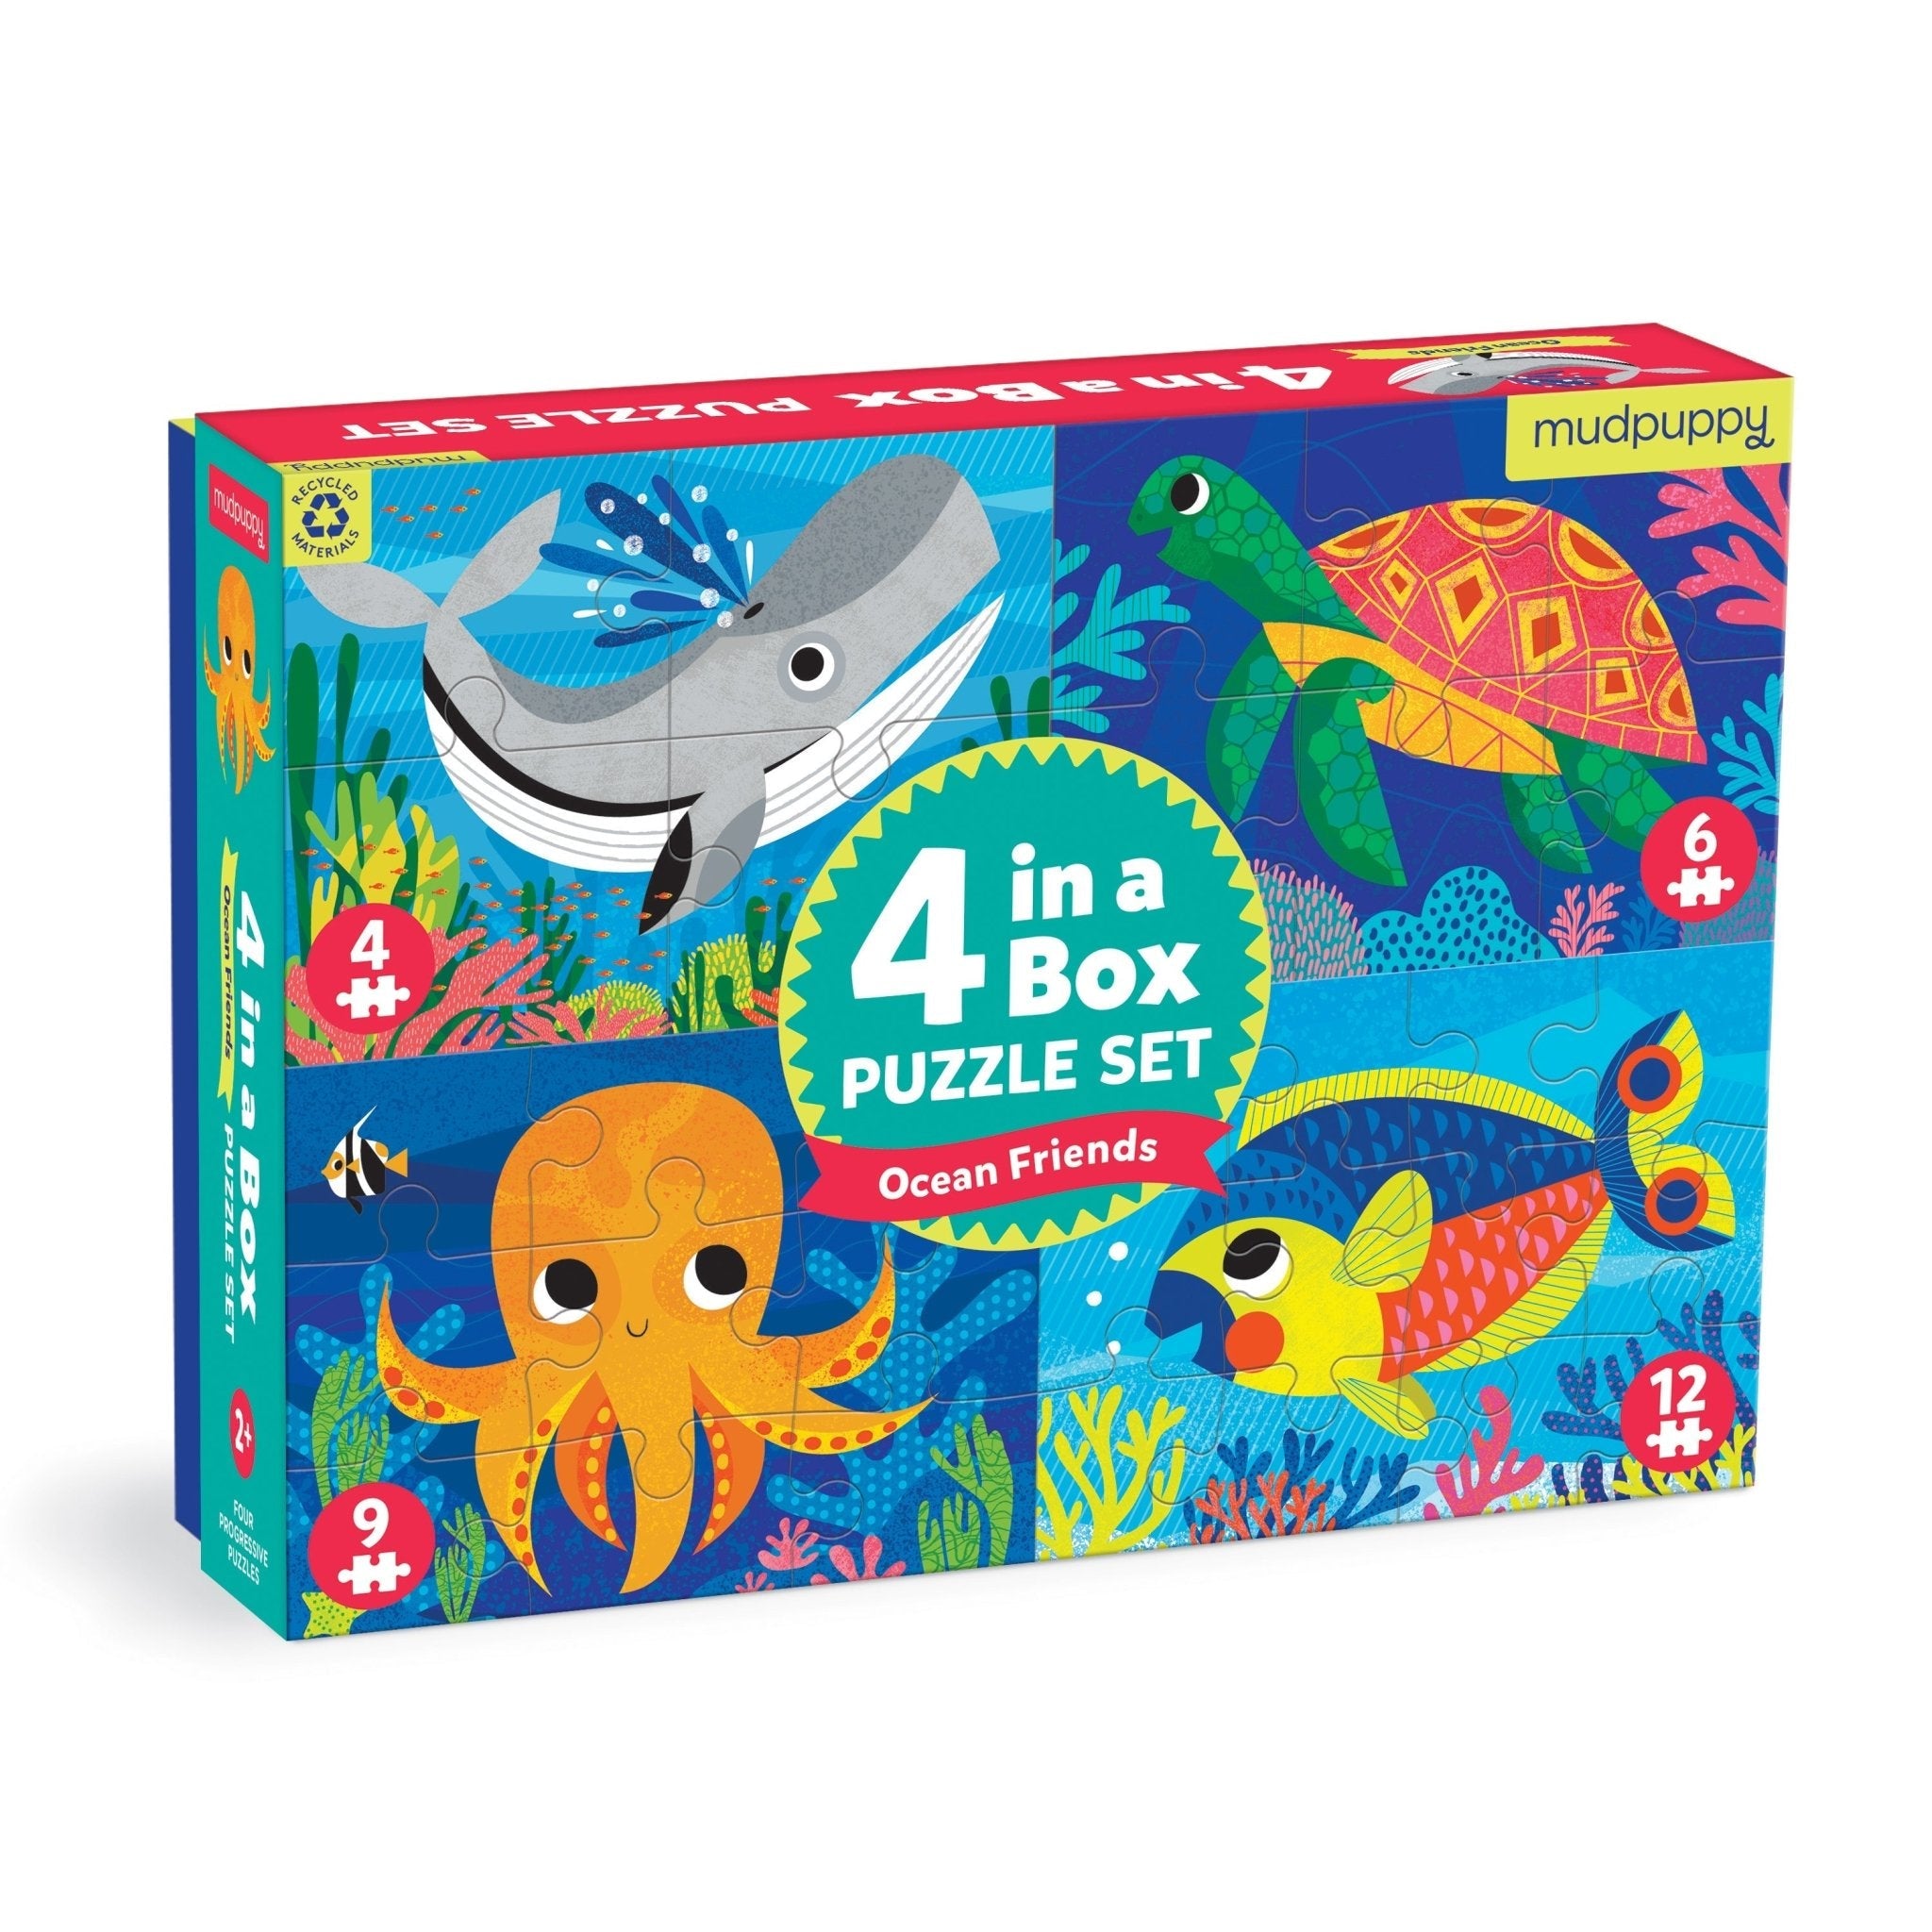 4 in a Box Ocean Friends Mudpuppy Puzzle